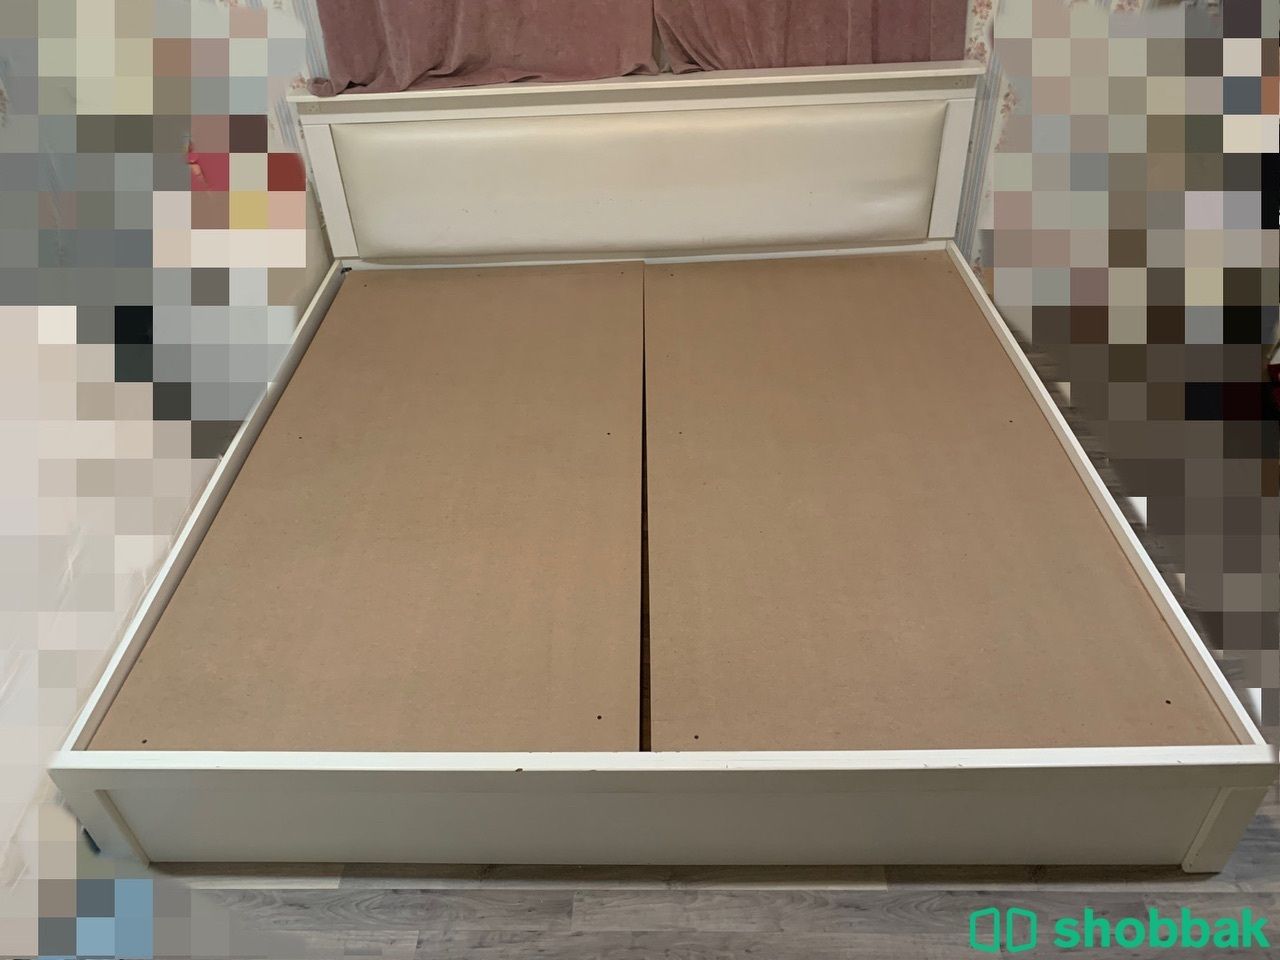 سرير مزدوج للبيع Shobbak Saudi Arabia